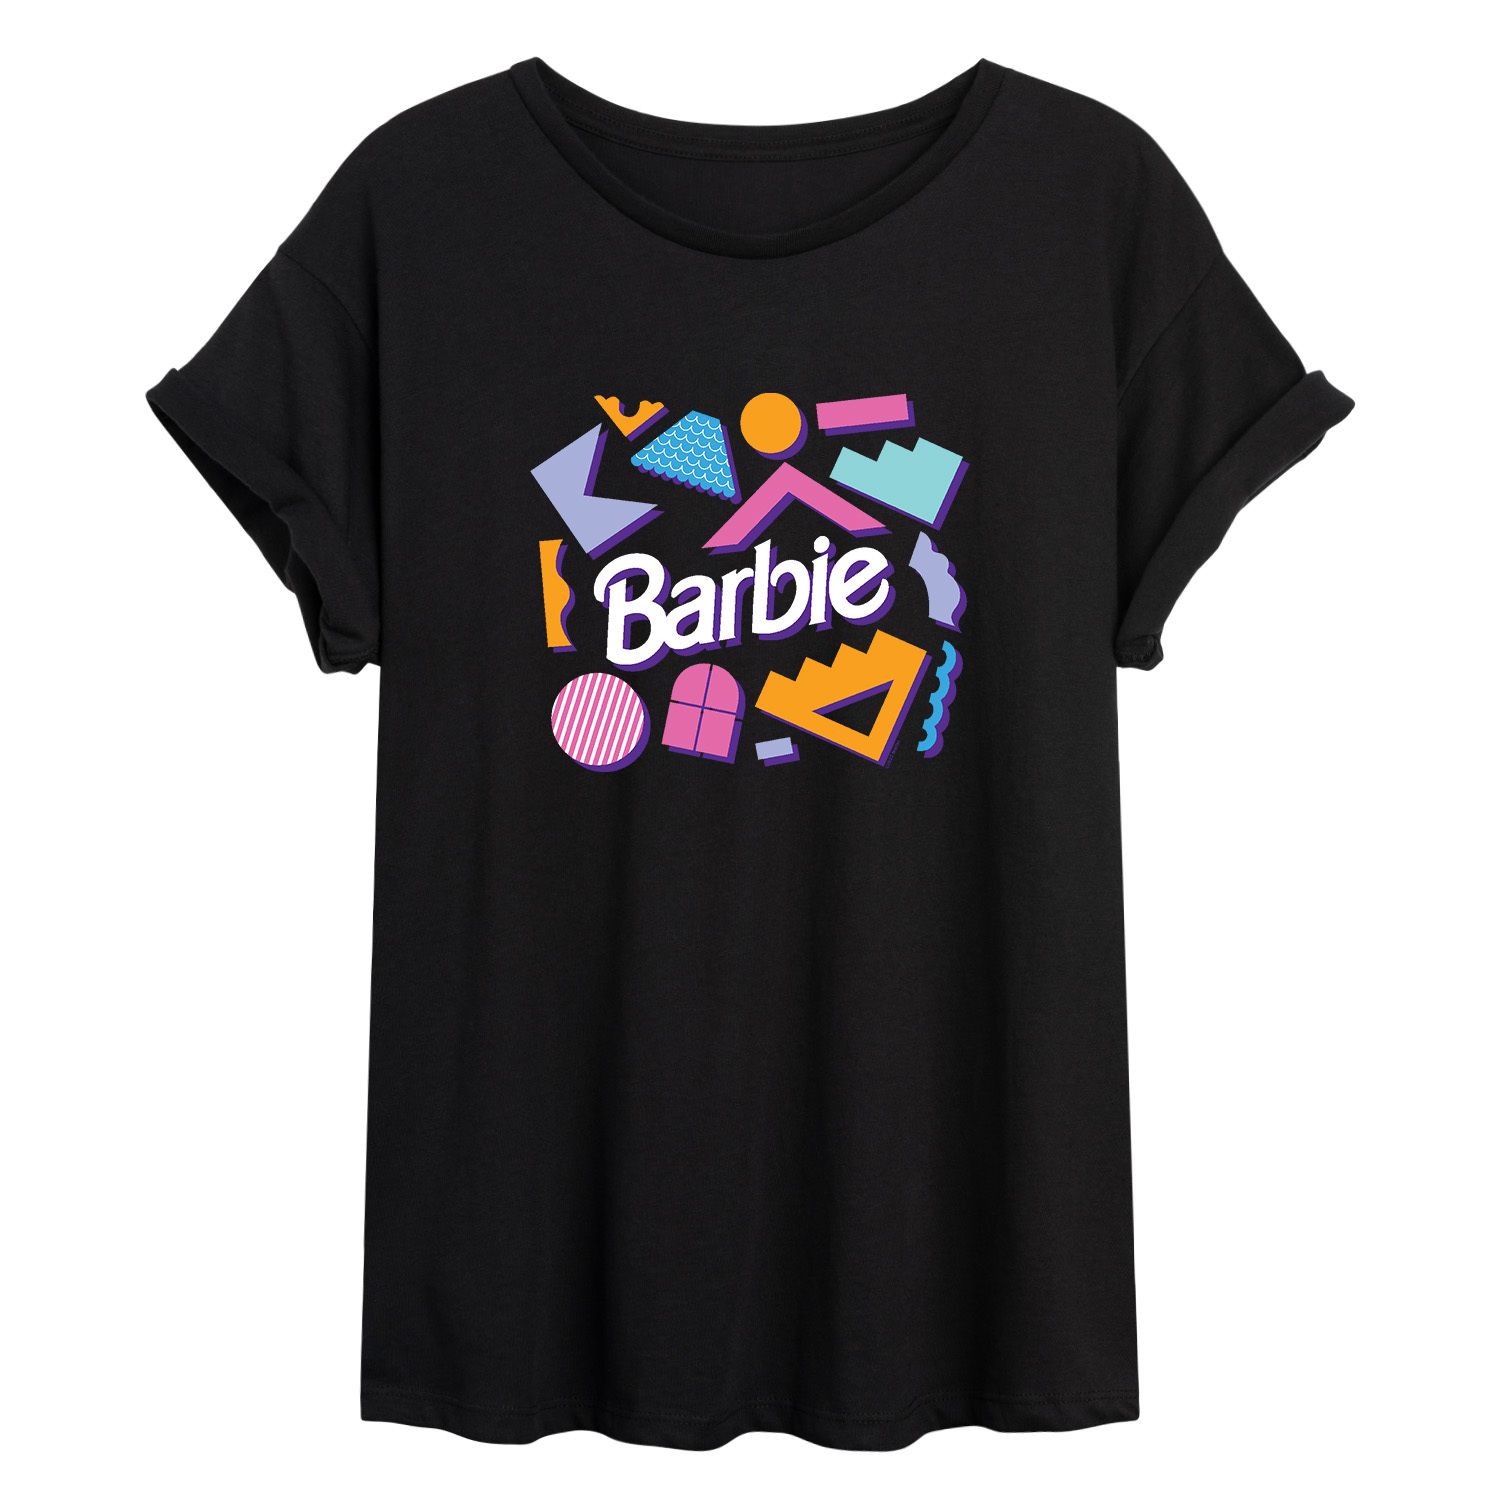 Футболка с рисунком «Кукольный домик Барби» для юниоров Licensed Character футболка с рисунком барби малибу для юниоров licensed character